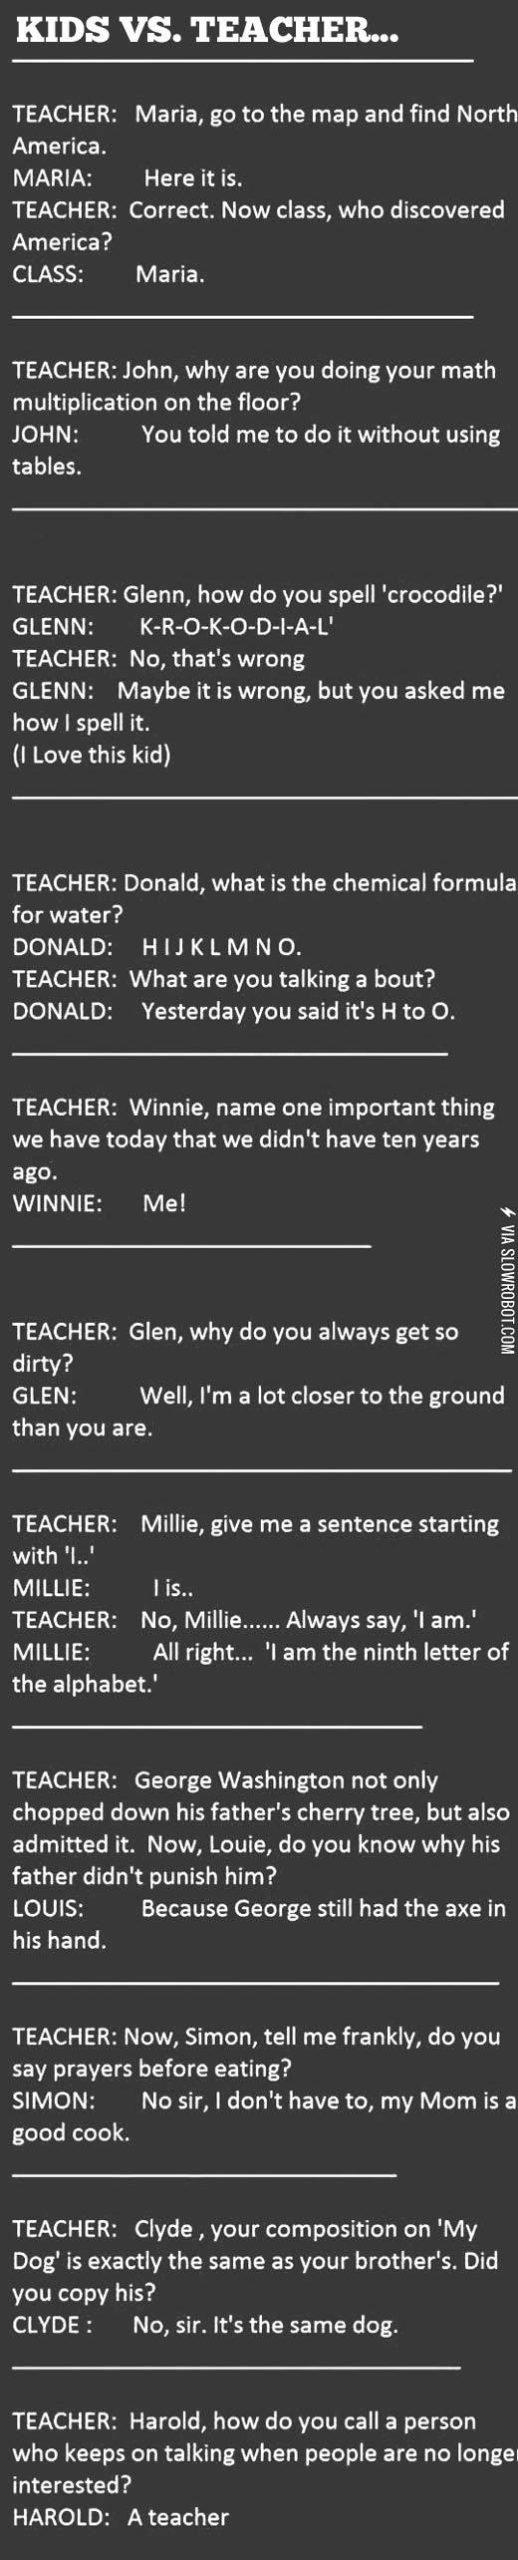 Kids+vs.+teacher.